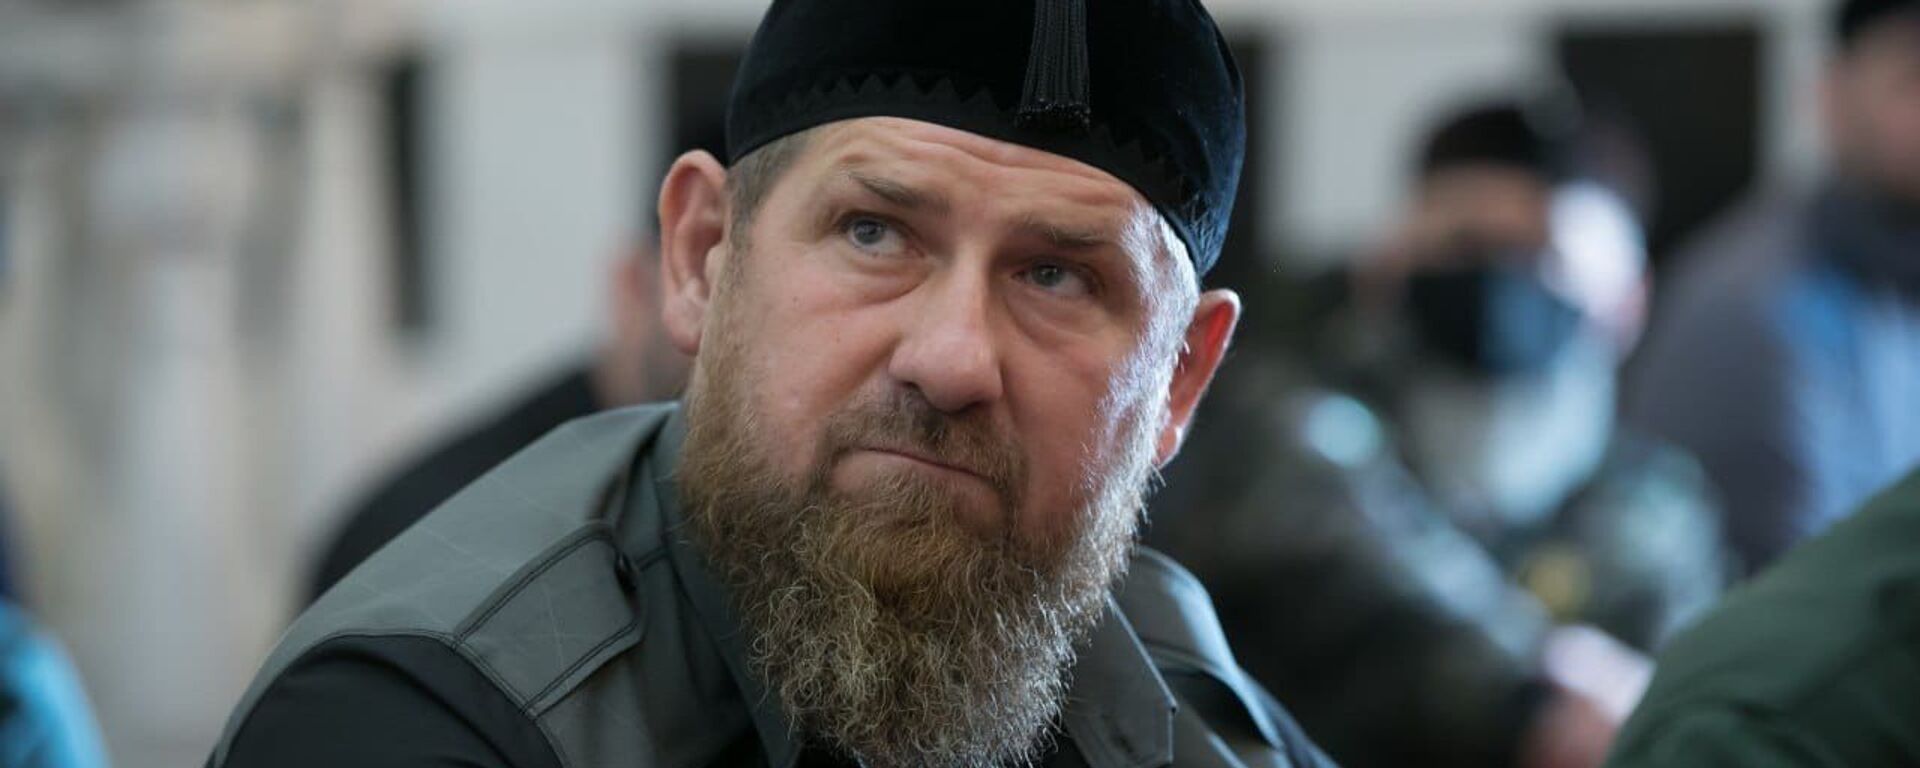 Глава Чечни Рамзан Кадыров - Sputnik Таджикистан, 1920, 03.09.2021